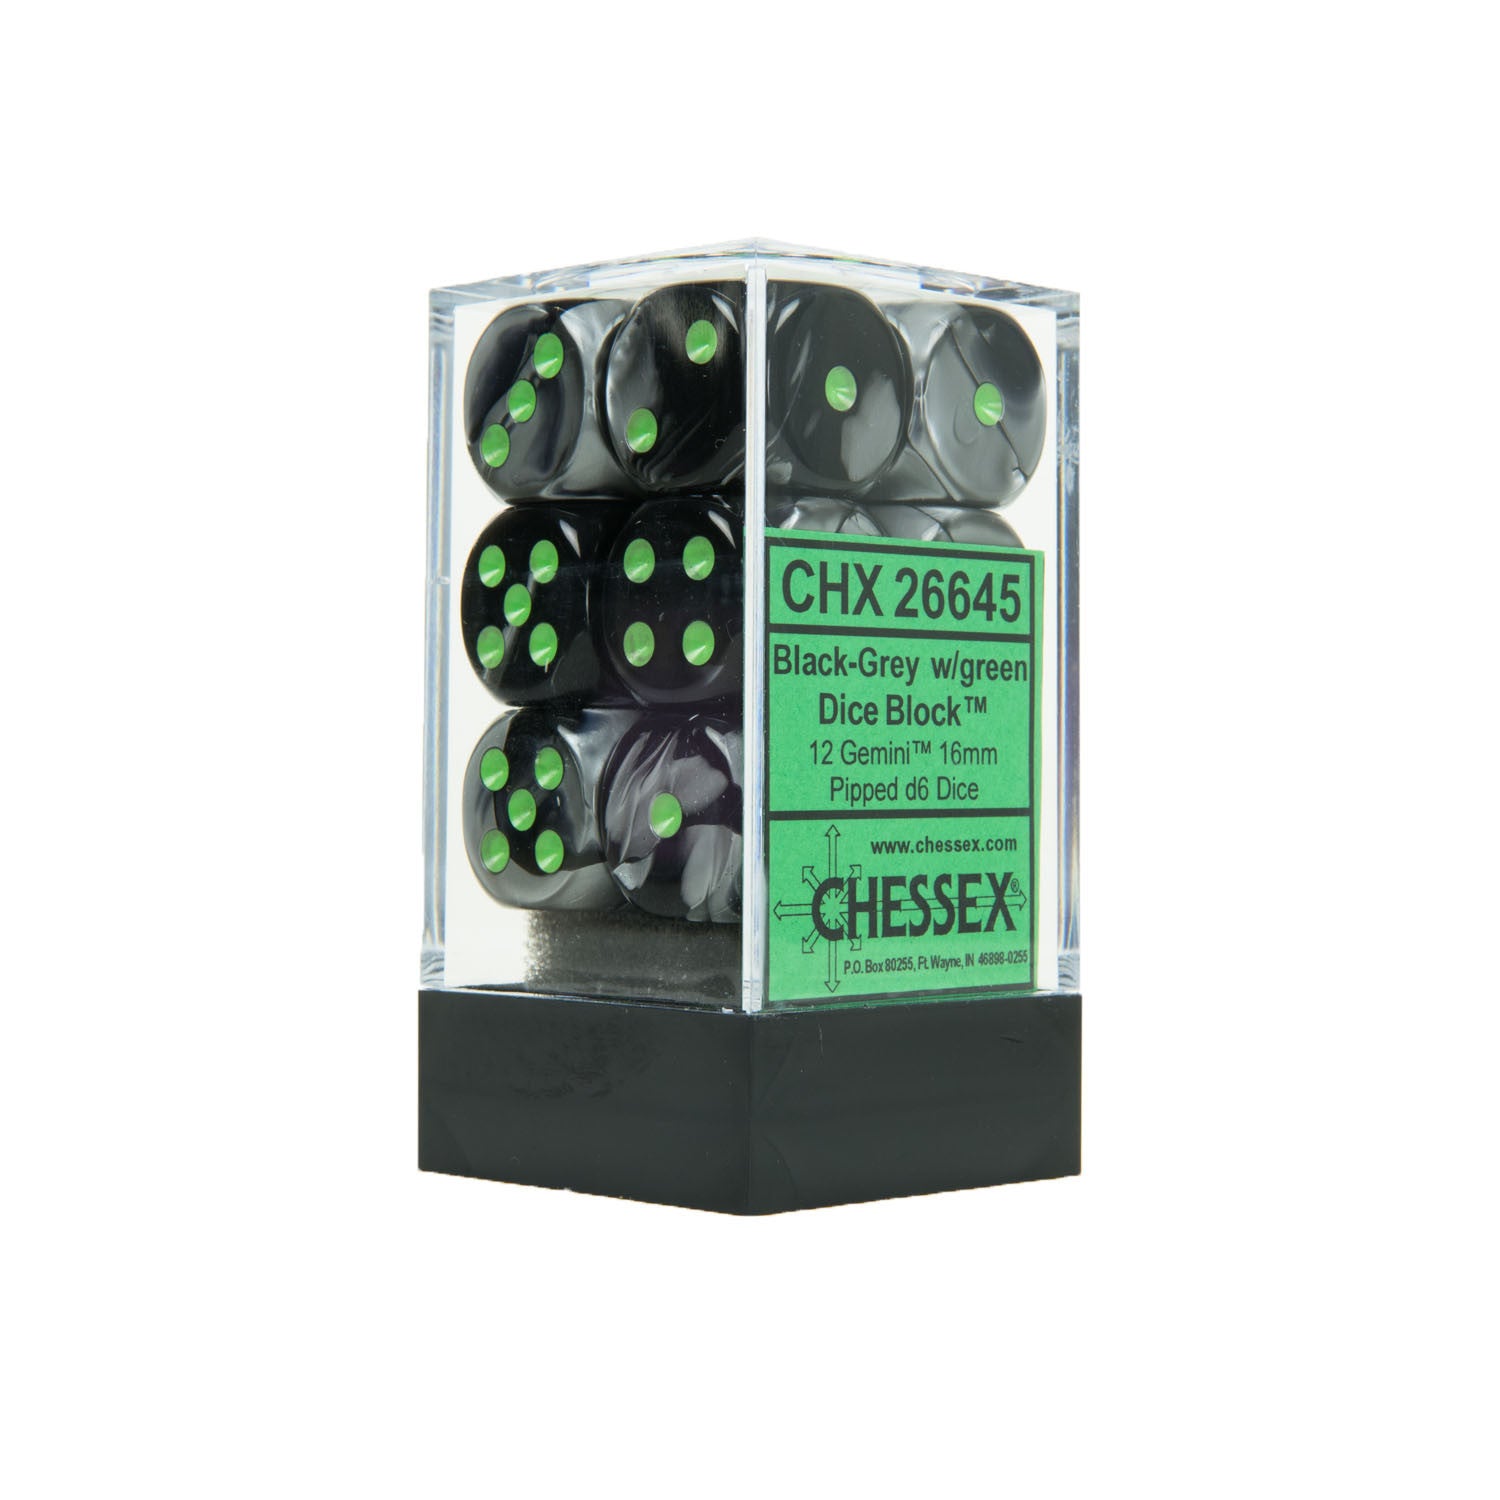 Chessex CHX26645 12 Black-Grey w/ green Gemini™ 16mm d6 Dice